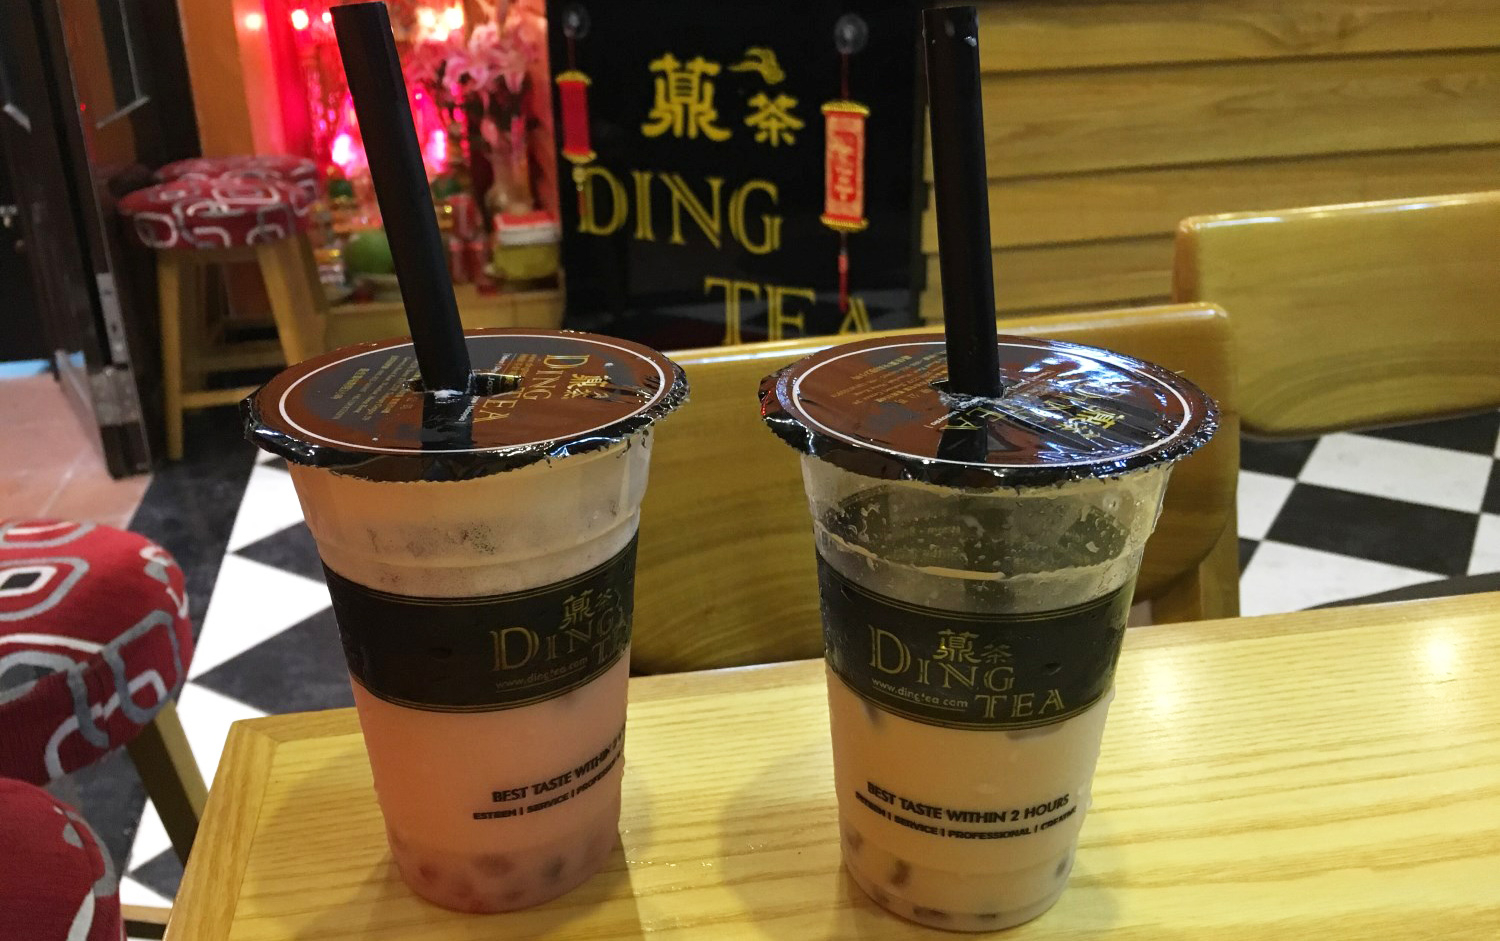 Ding Tea là một trong những thương hiệu trà sữa nổi tiếng hàng đầu tại Đài Loan. Với trà sữa đậm đà, lớp kem béo ngậy và những loại topping đa dạng, Ding Tea định hình một hương vị độc đáo và riêng biệt. Nhấn vào hình ảnh để khám phá đồ uống thú vị của Ding Tea.